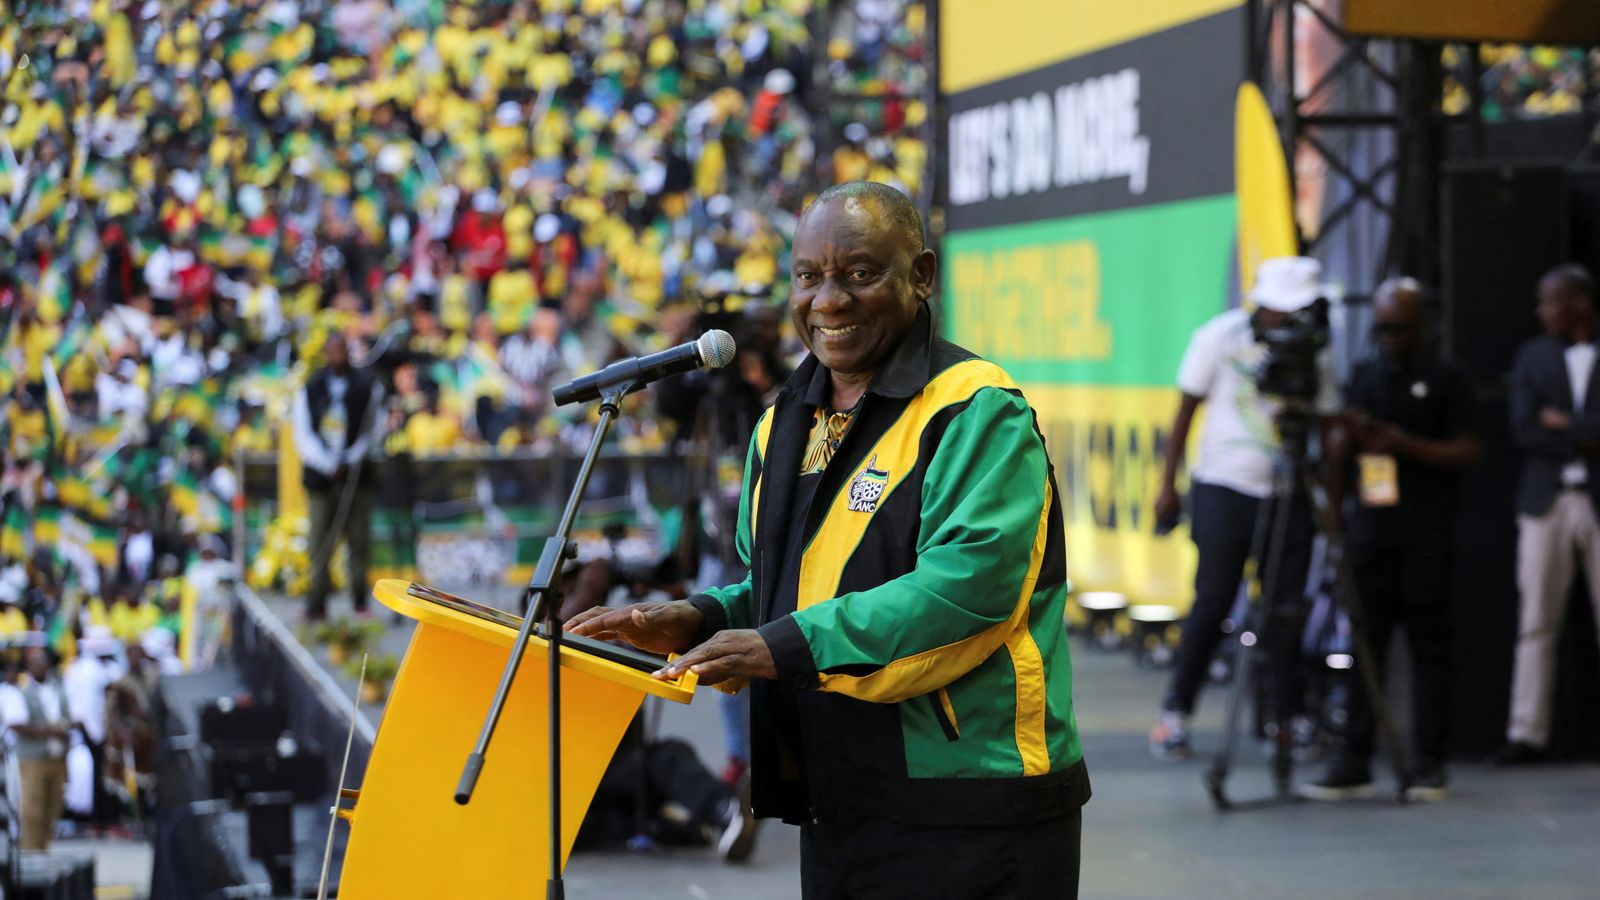 « Rugissez, jeunes lions, rugissez » : l’appel de ralliement du président sud-africain avant les élections dans un contexte de mécontentement croissant |  Nouvelles du monde